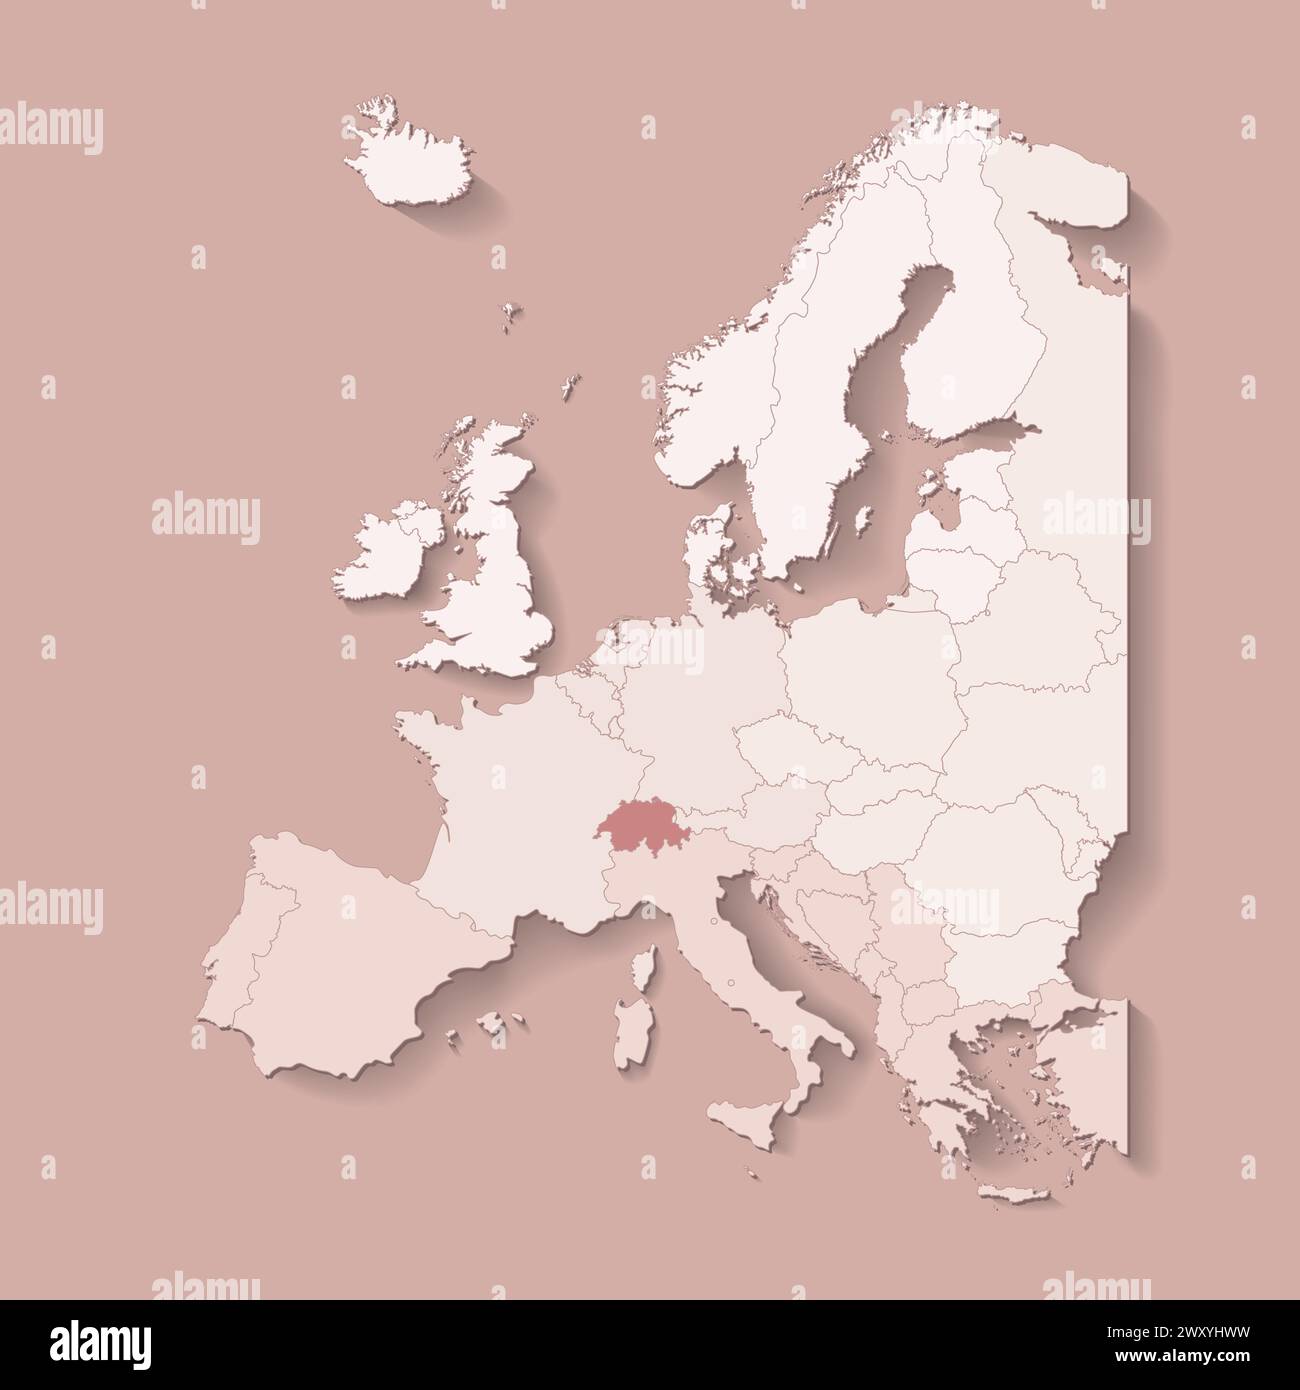 Illustrazione vettoriale con terra europea con confini di stati e paese contrassegnato Svizzera. Mappa politica di colore marrone con occidentale, sud e così via Illustrazione Vettoriale